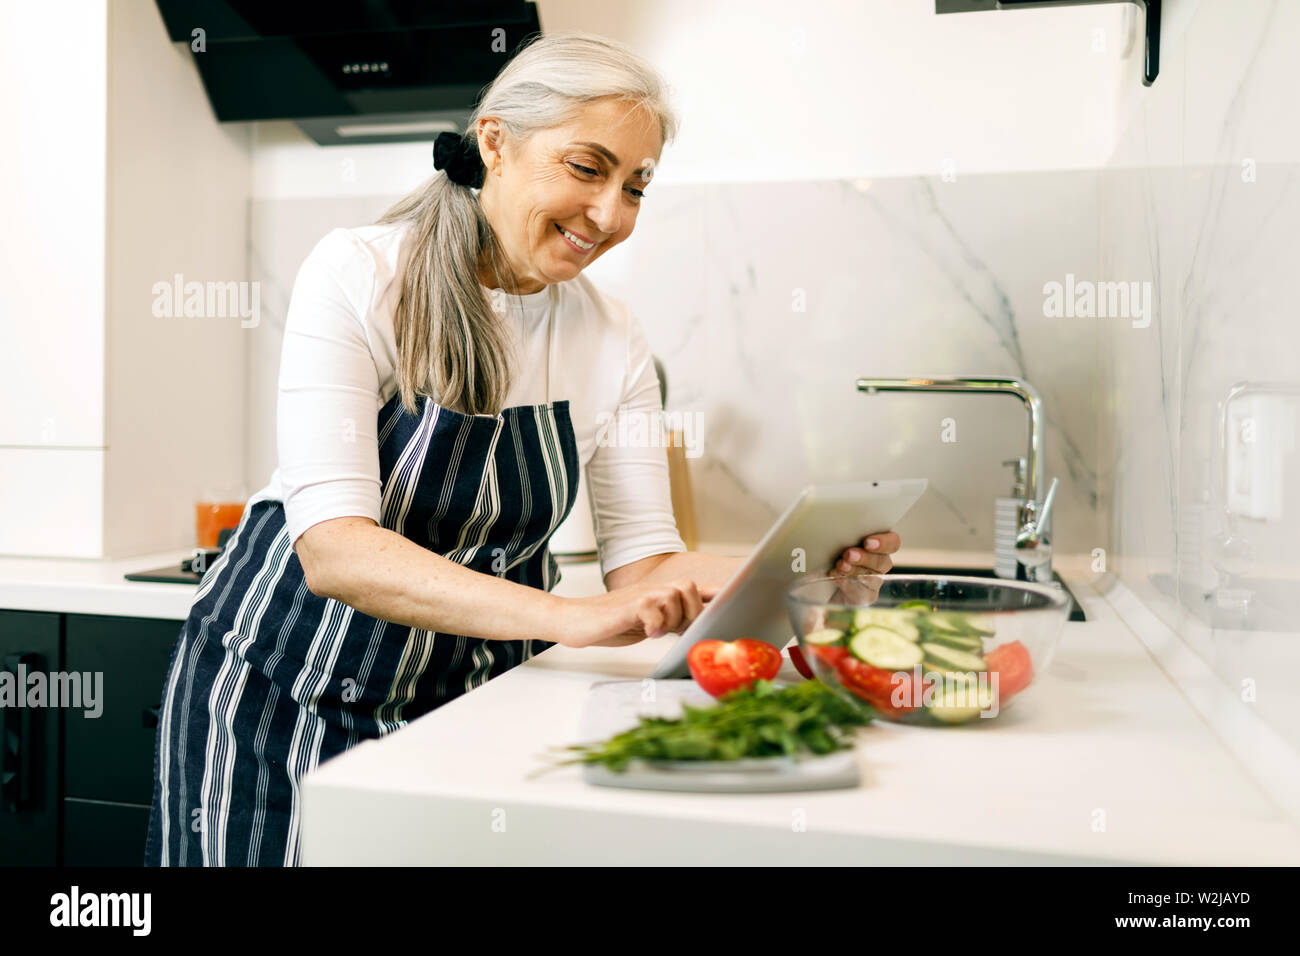 Lächelnde ältere Frau mit weißen Haaren in eine Schürze mit Tablette beim Kochen in der Küche Stockfoto